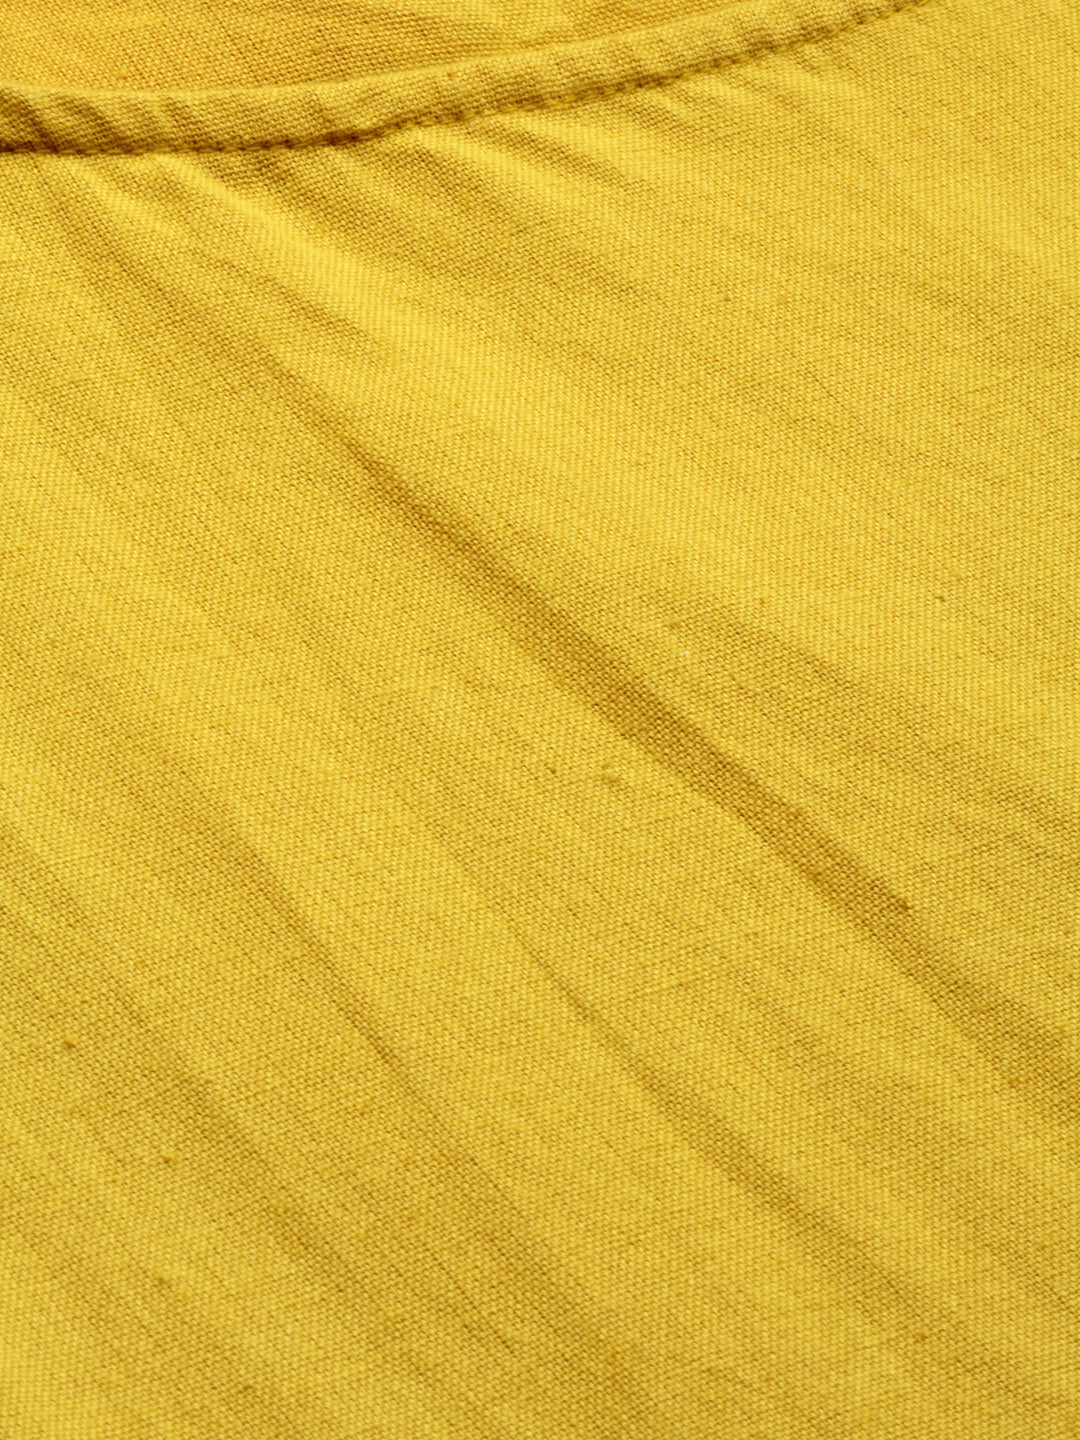 Neerus Women Mustard Yellow  Off-White Solid A-Line Kurta With Shrug